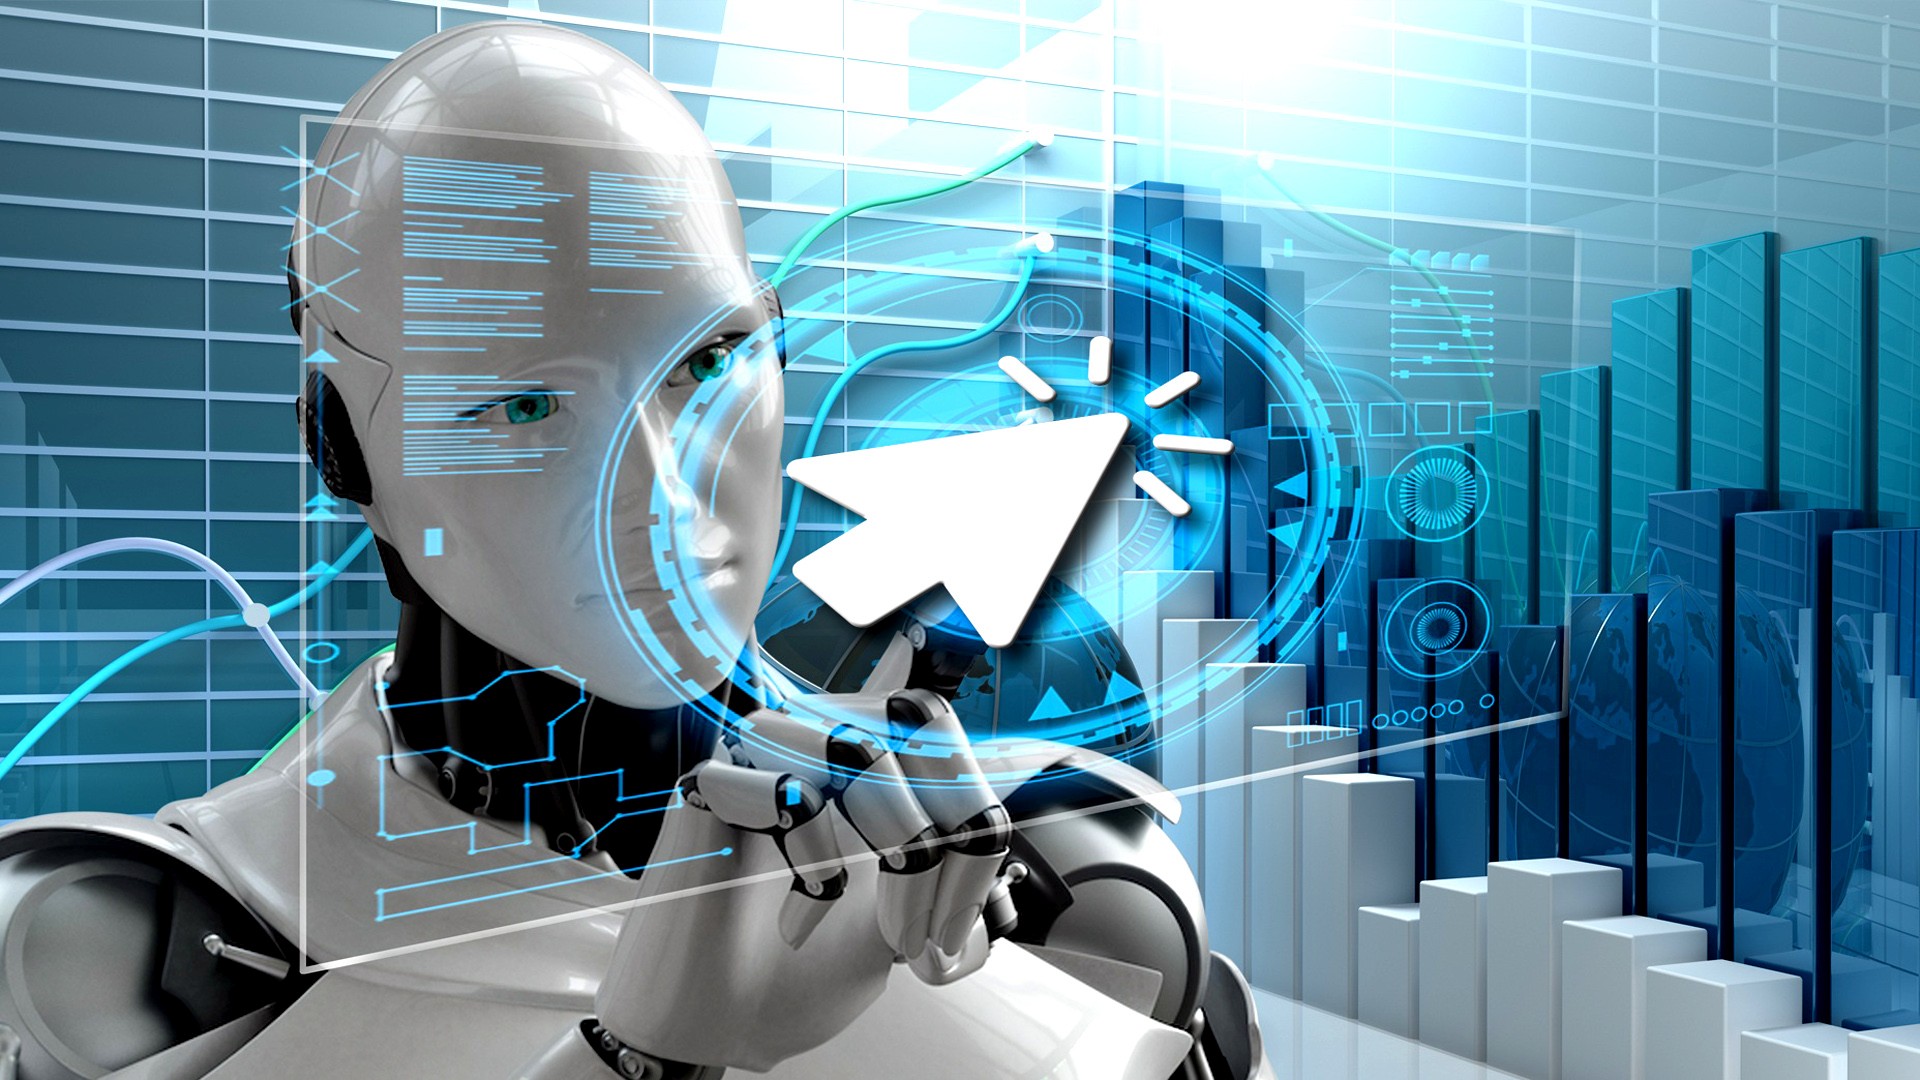 Testautomation und künstliche Intelligenz: Möglichkeiten und Grenzen